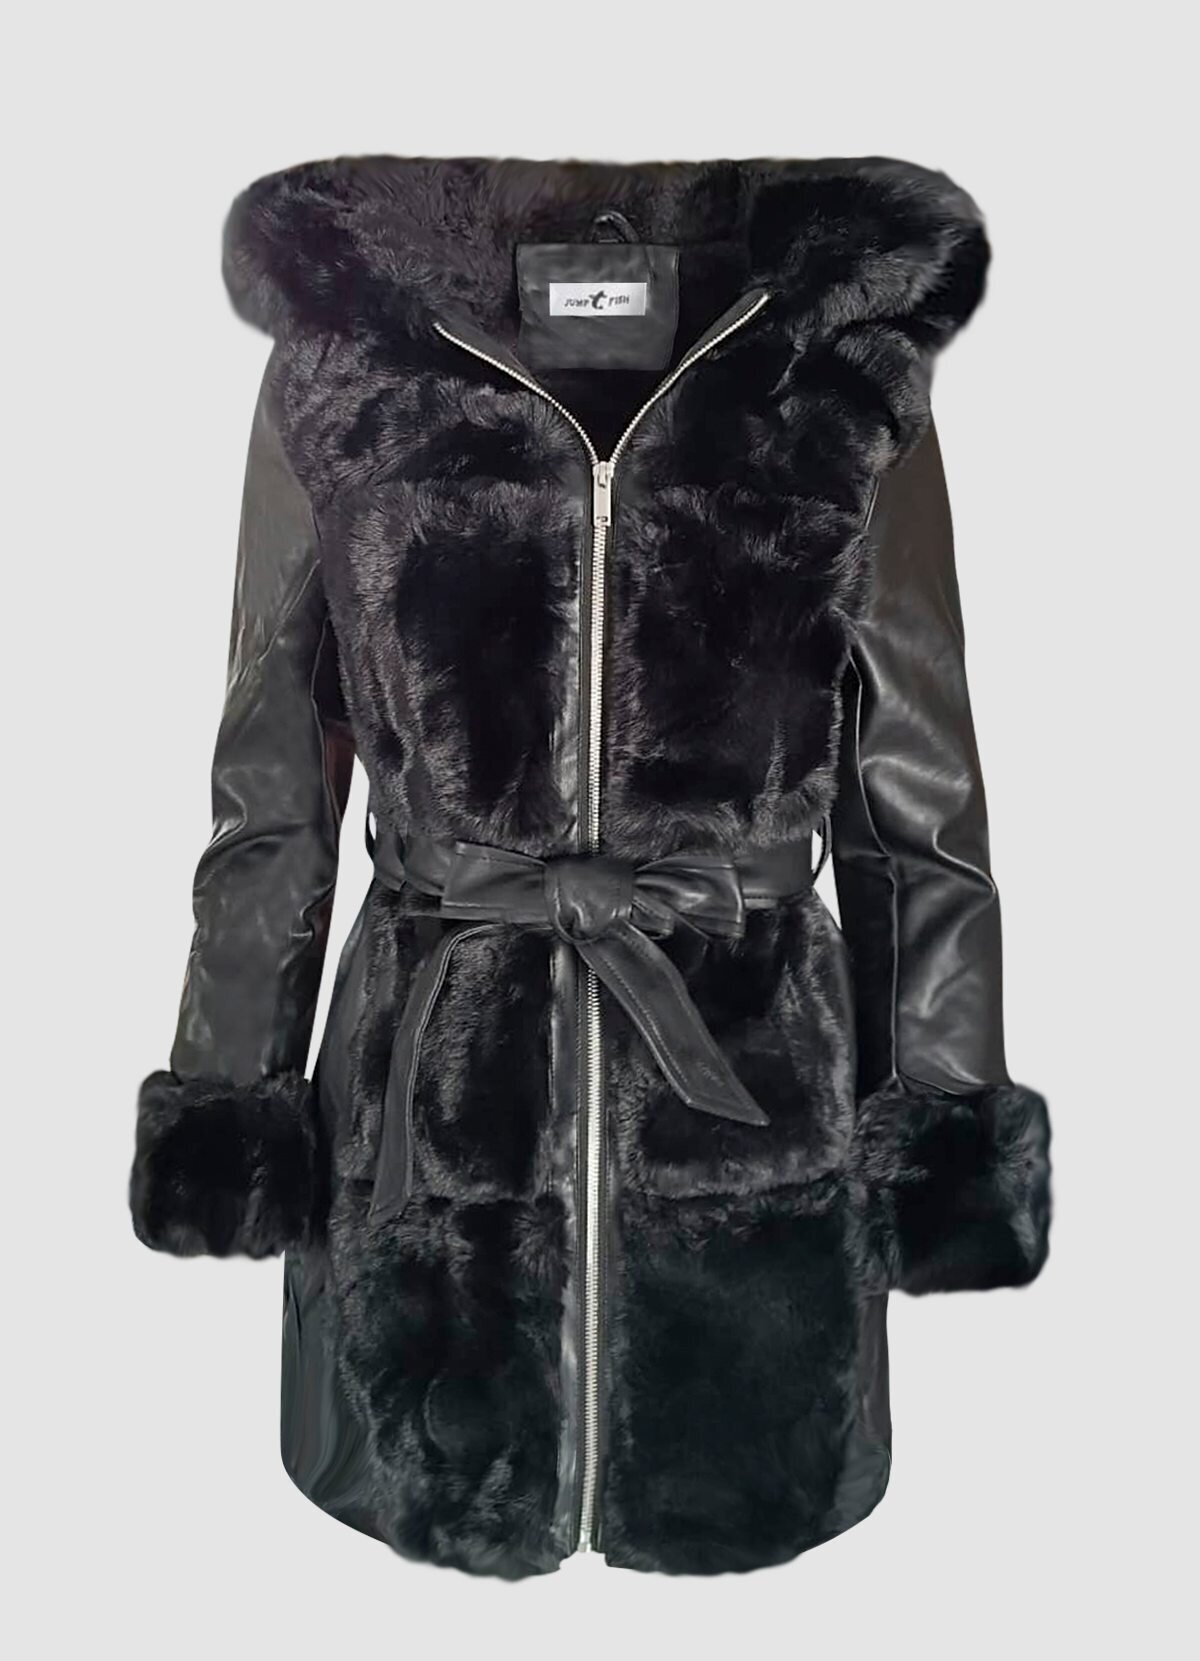 μεσάτο δερματίνη jacket με γούνα,ζώνη & κουκούλα F/W 2022/23 -  Parizianista.gr